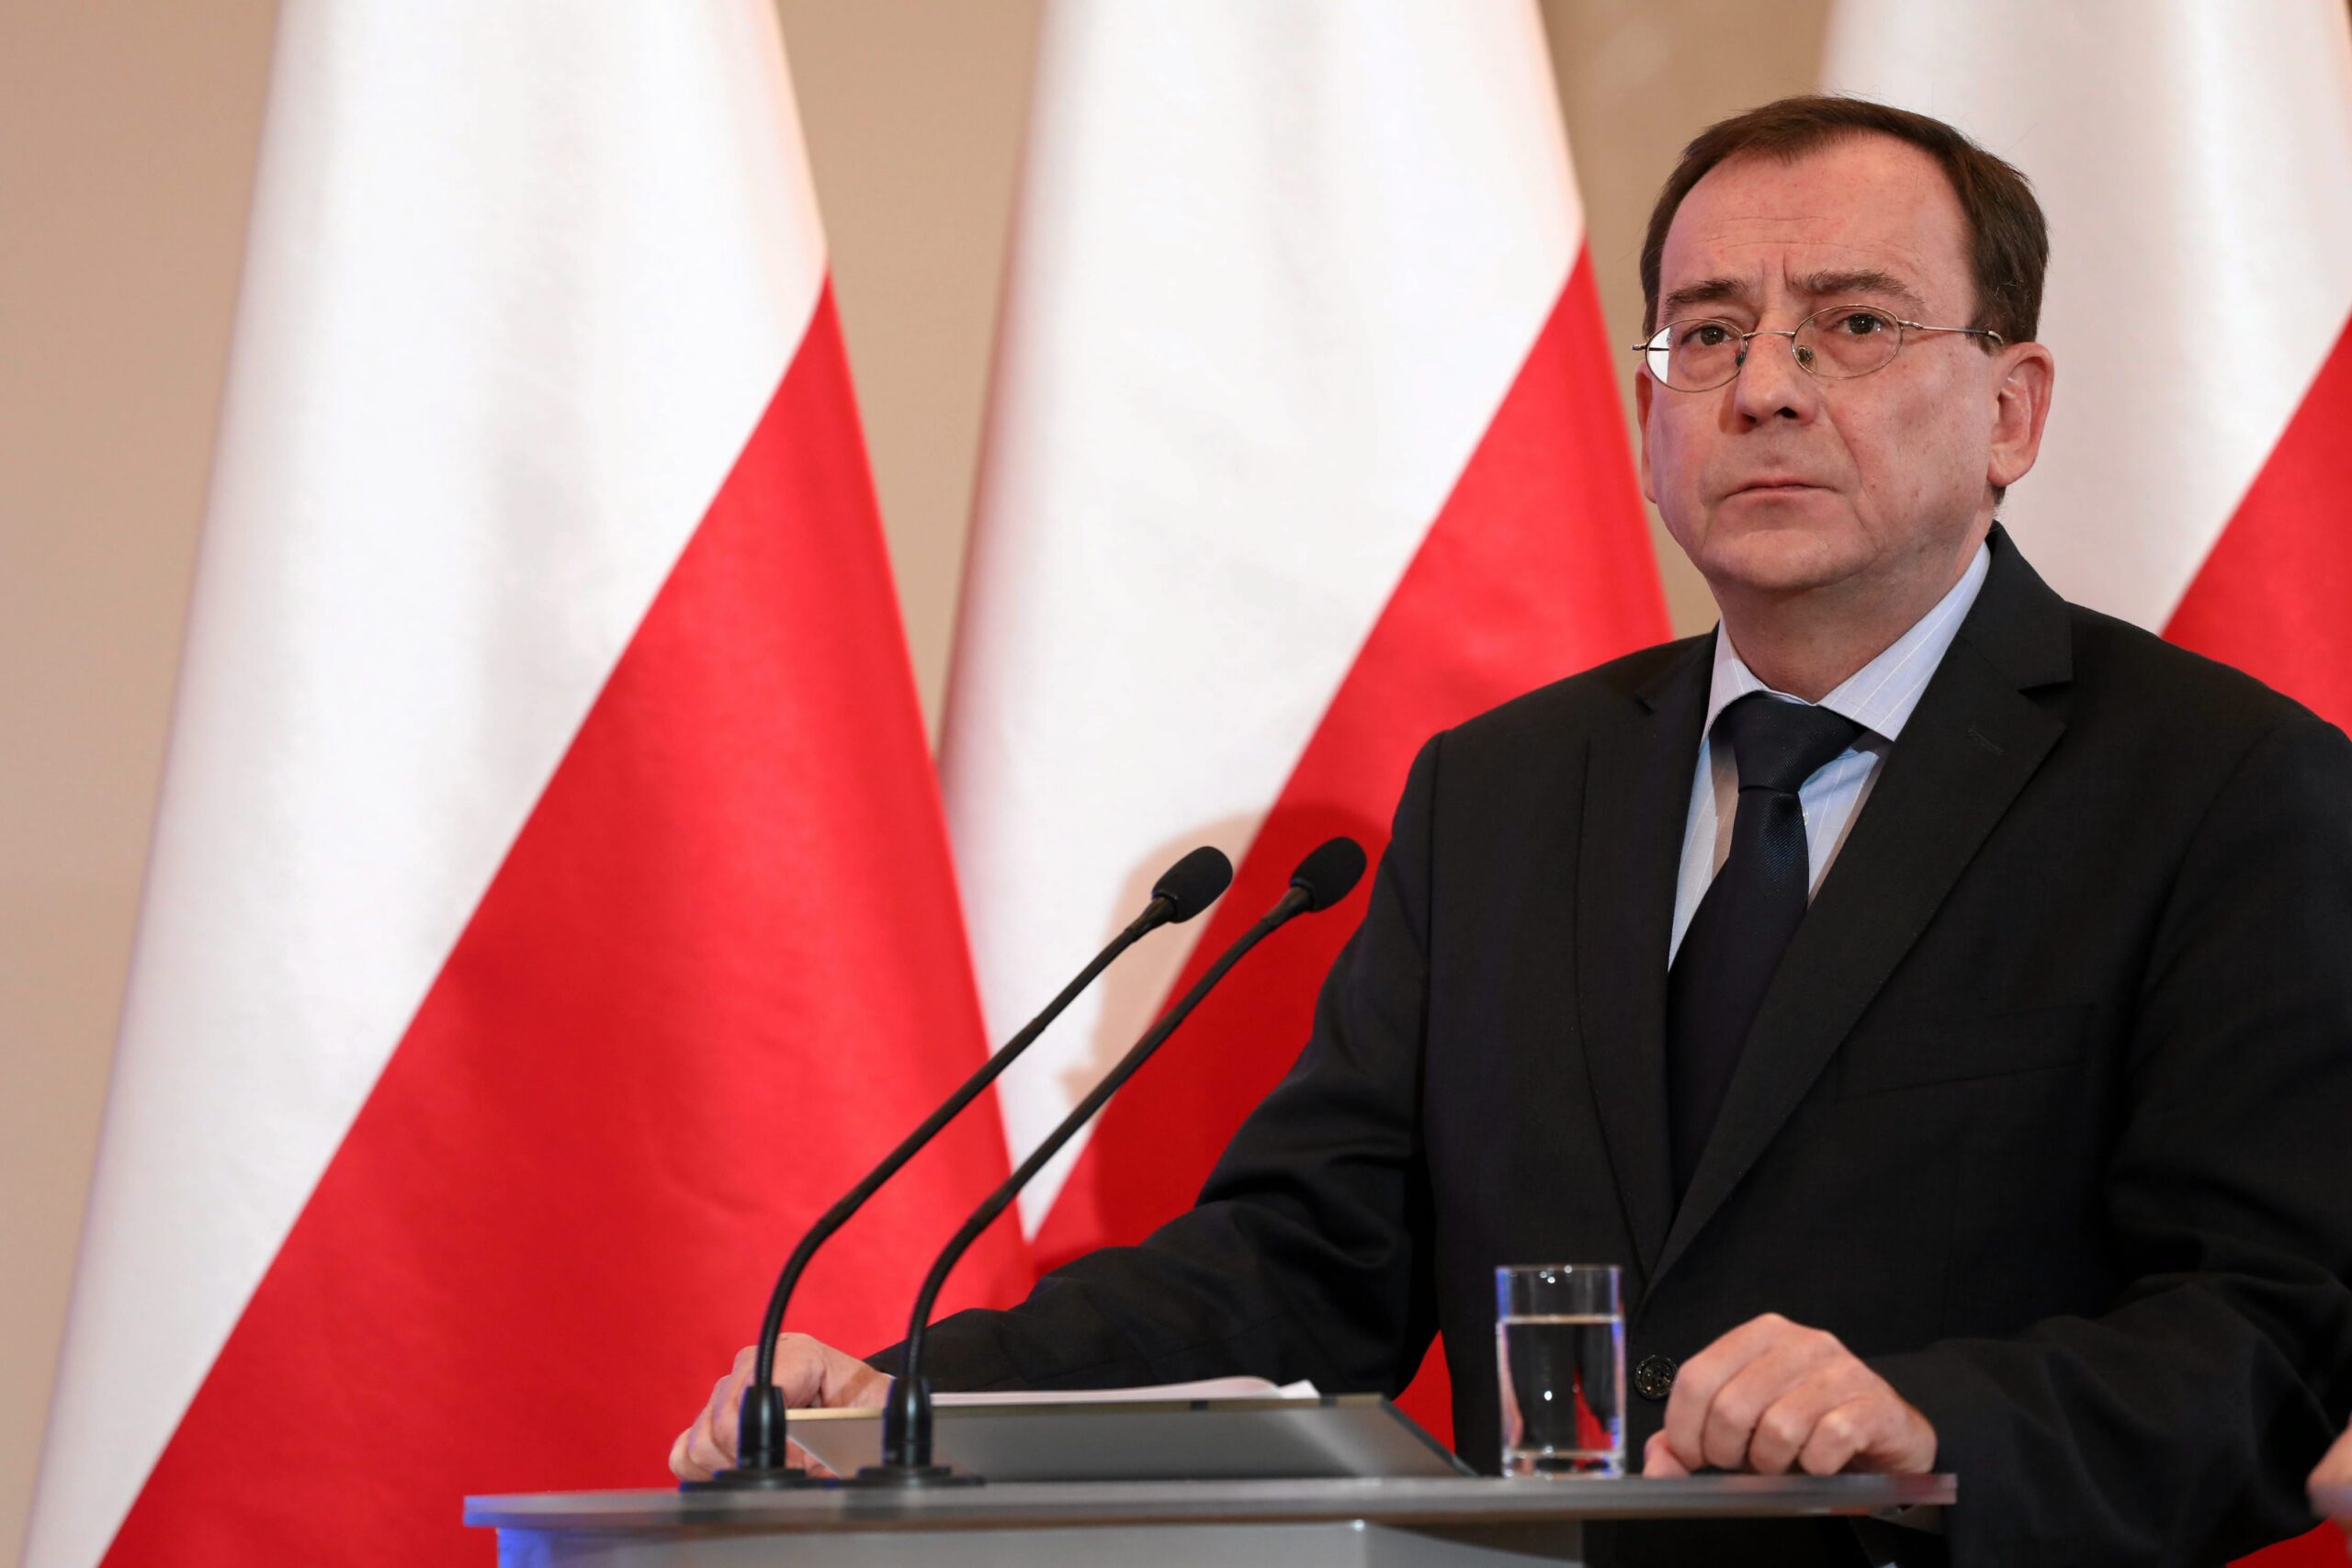 Польща погрожує “відрізати” Білорусь від Європи в разі провокацій на кордоні